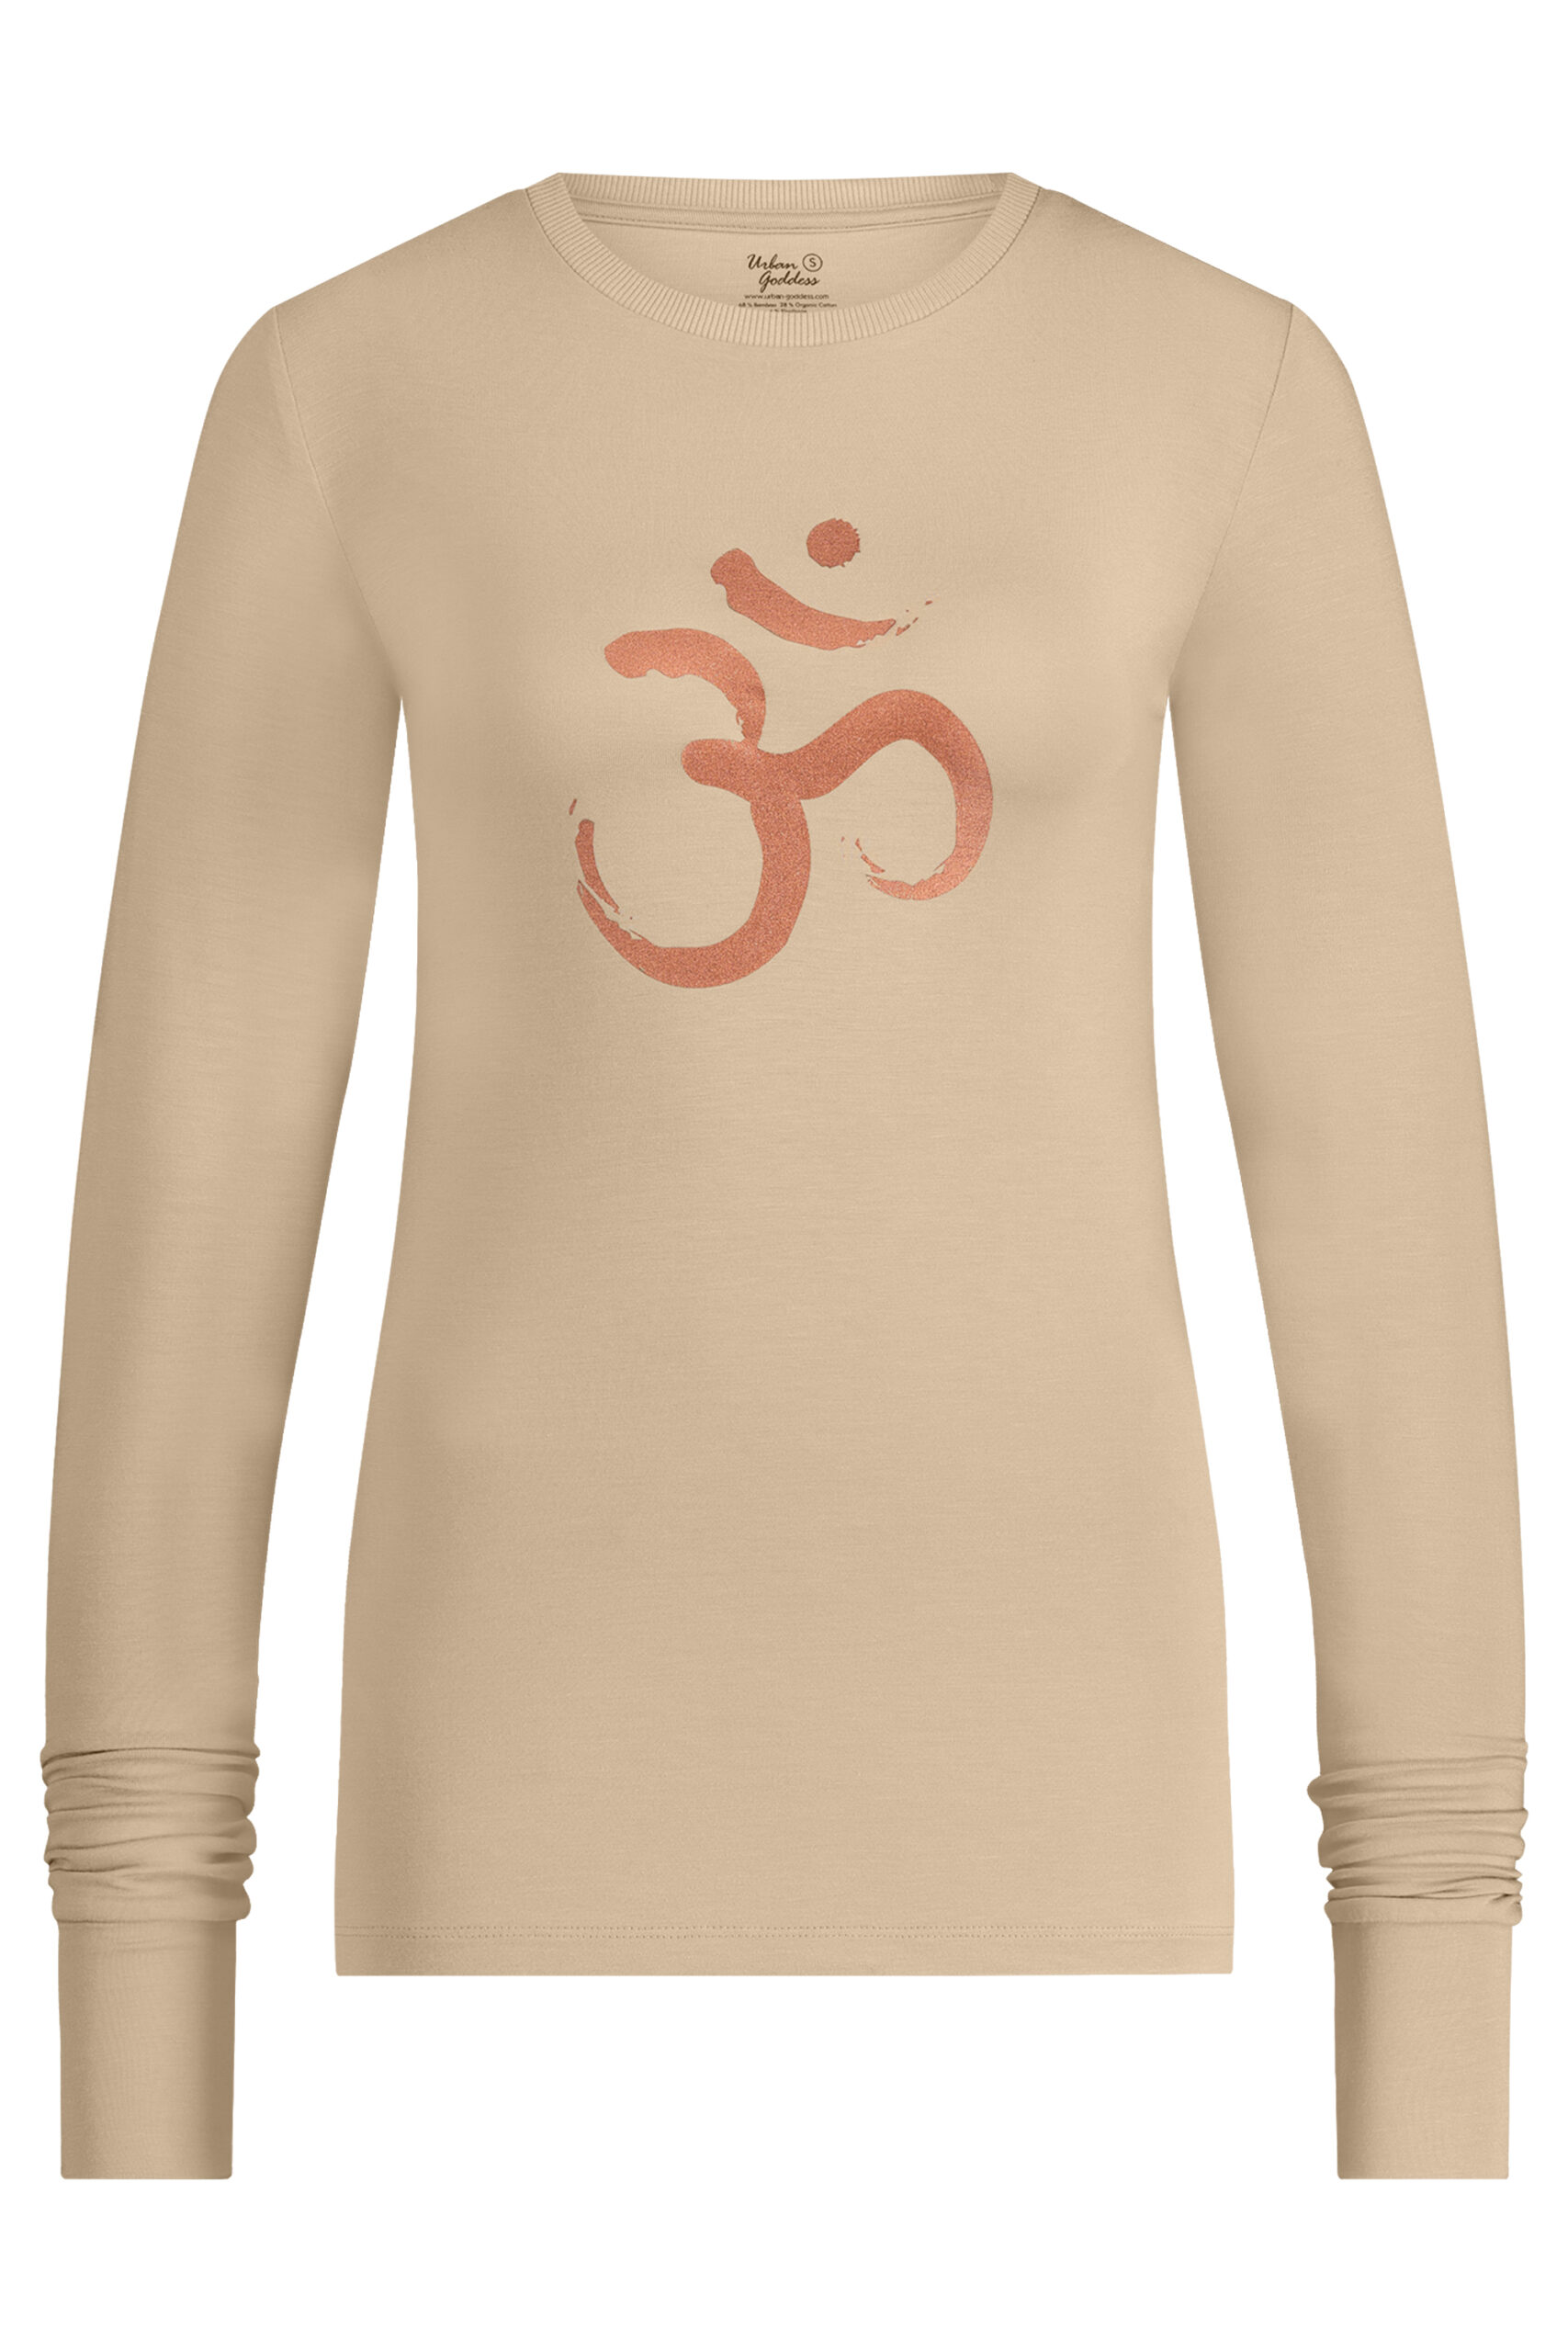 Karuna OM Langarm-Yoga-Shirt, Sand